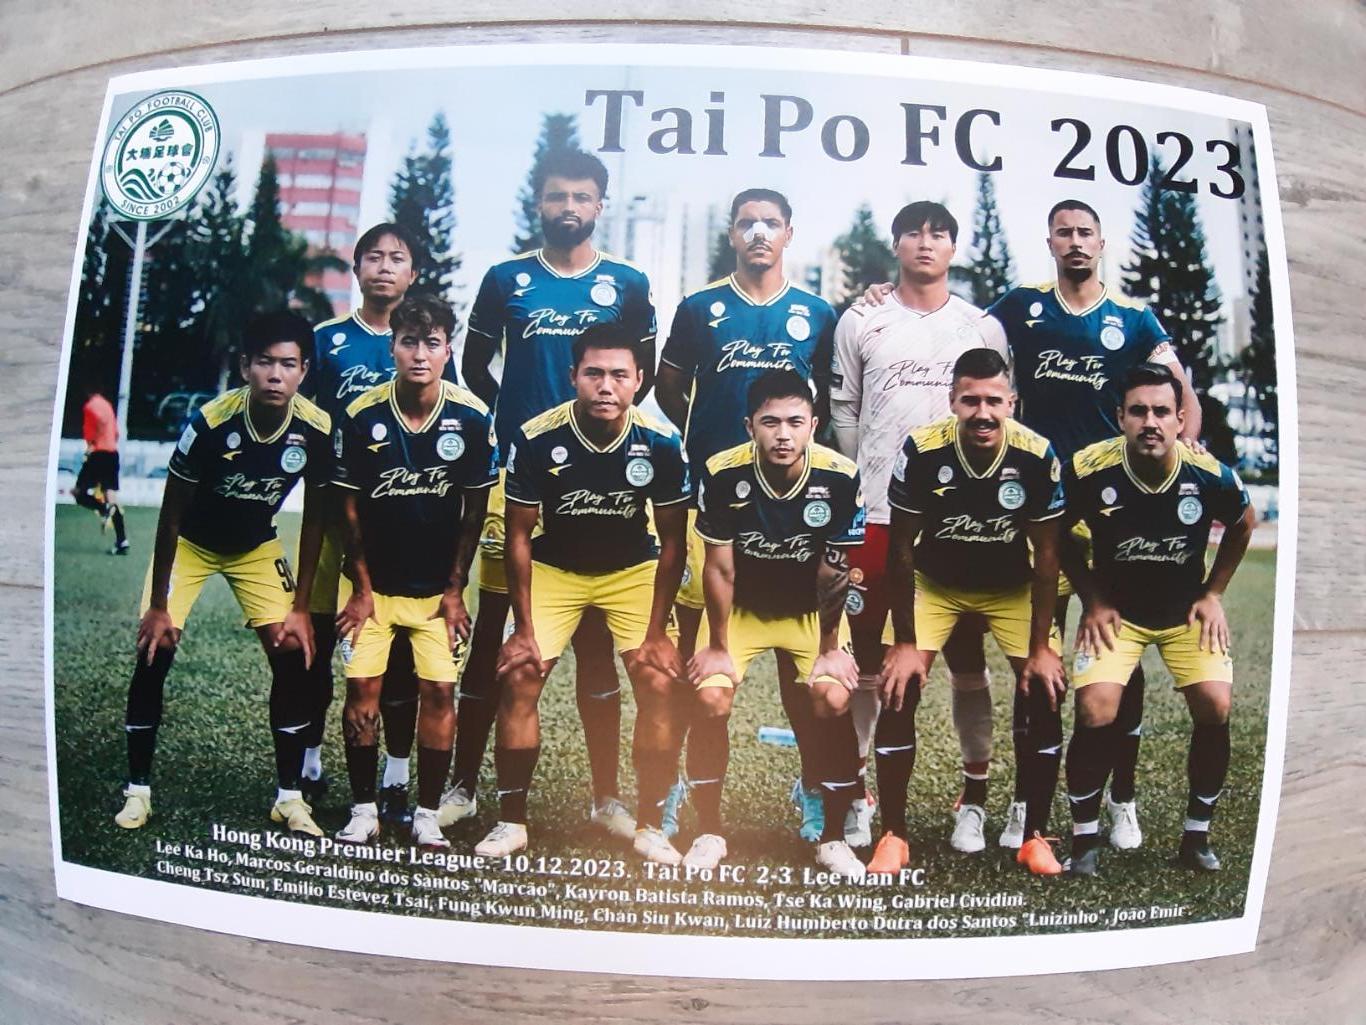 Tai Po FC. 2023 (Hong Kong)